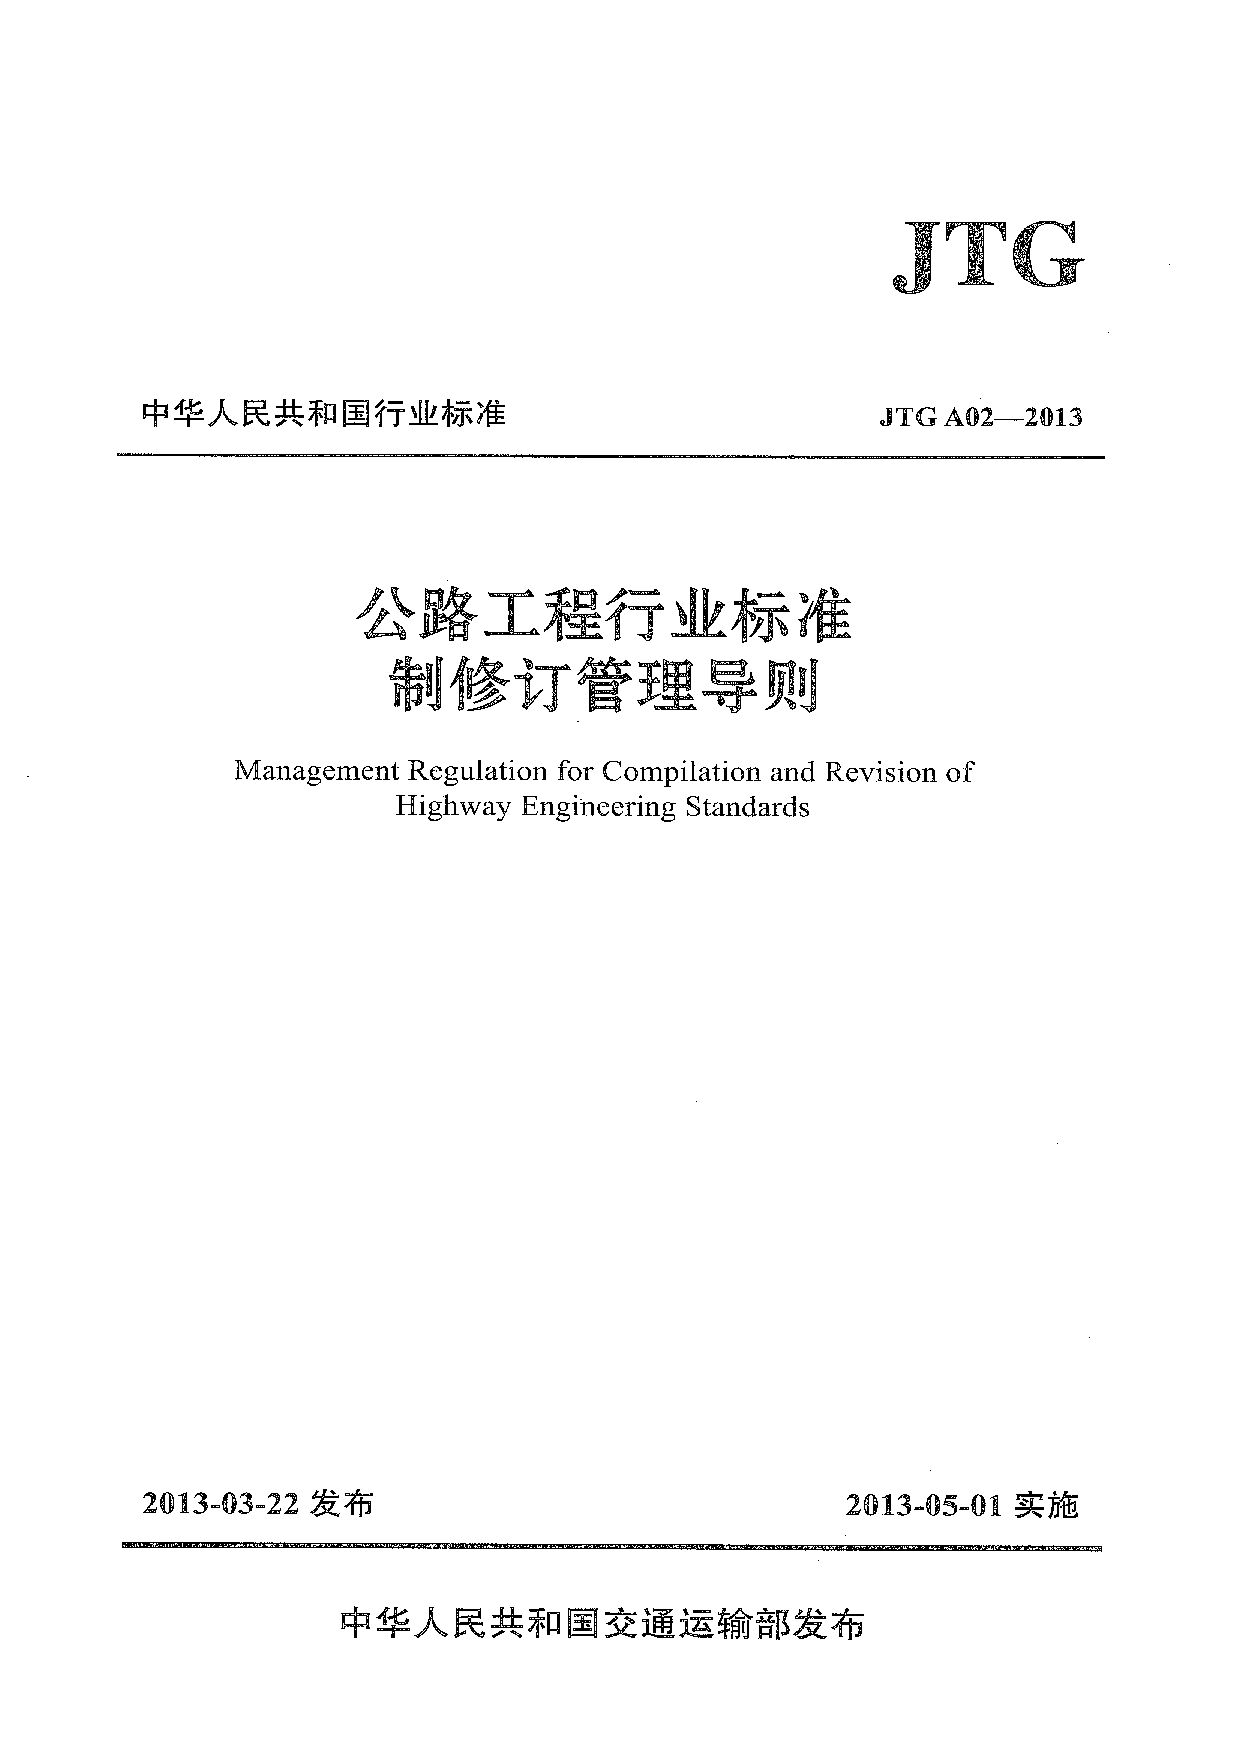 JTG A02-2013封面图